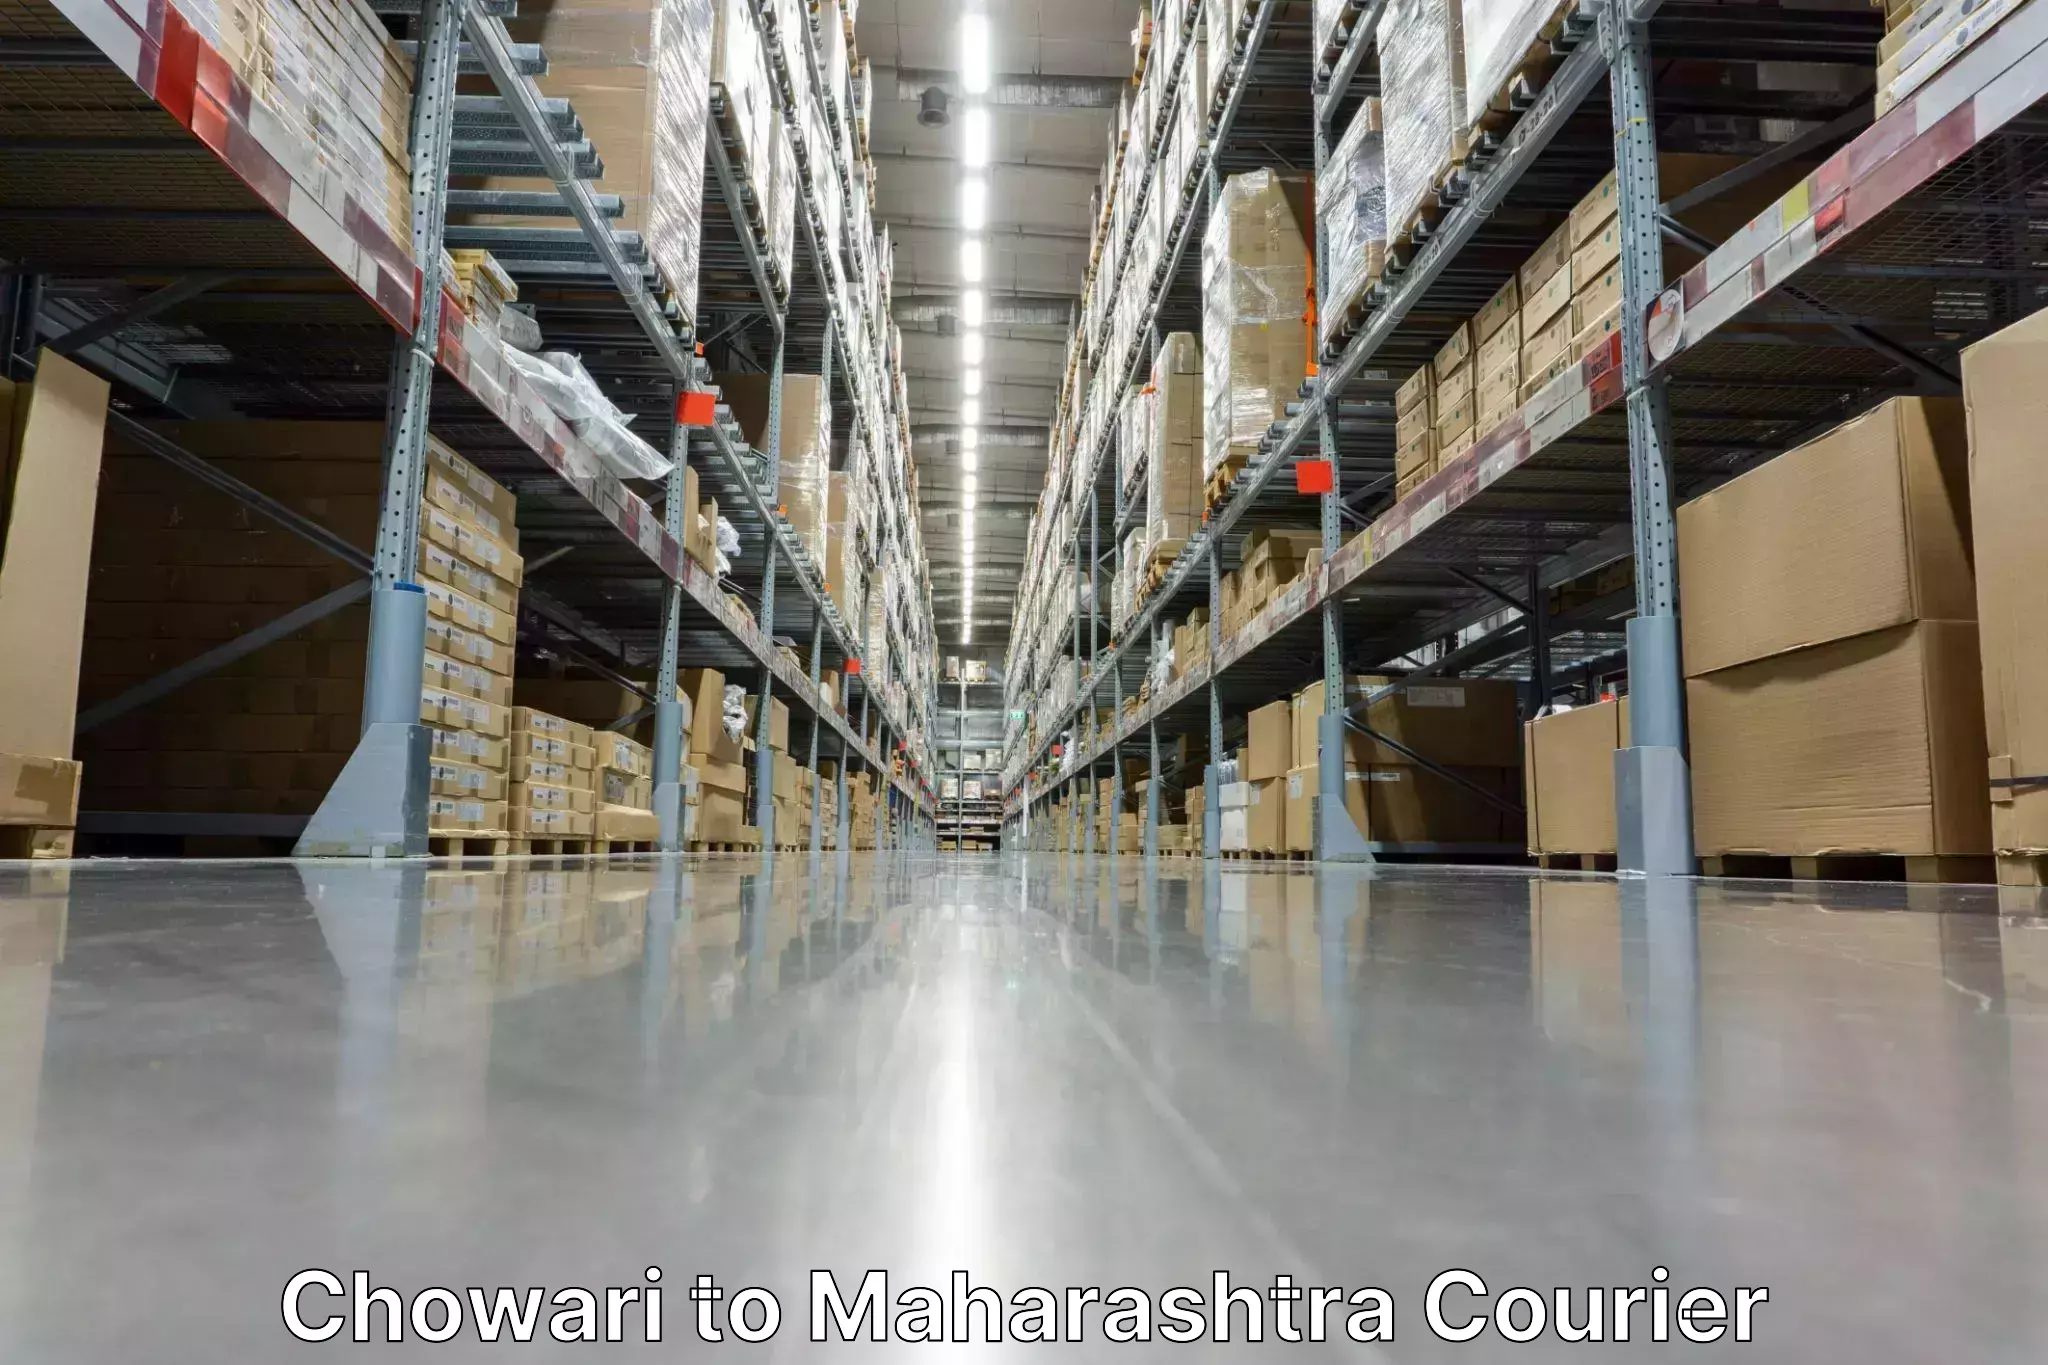 Courier service partnerships Chowari to Maharashtra